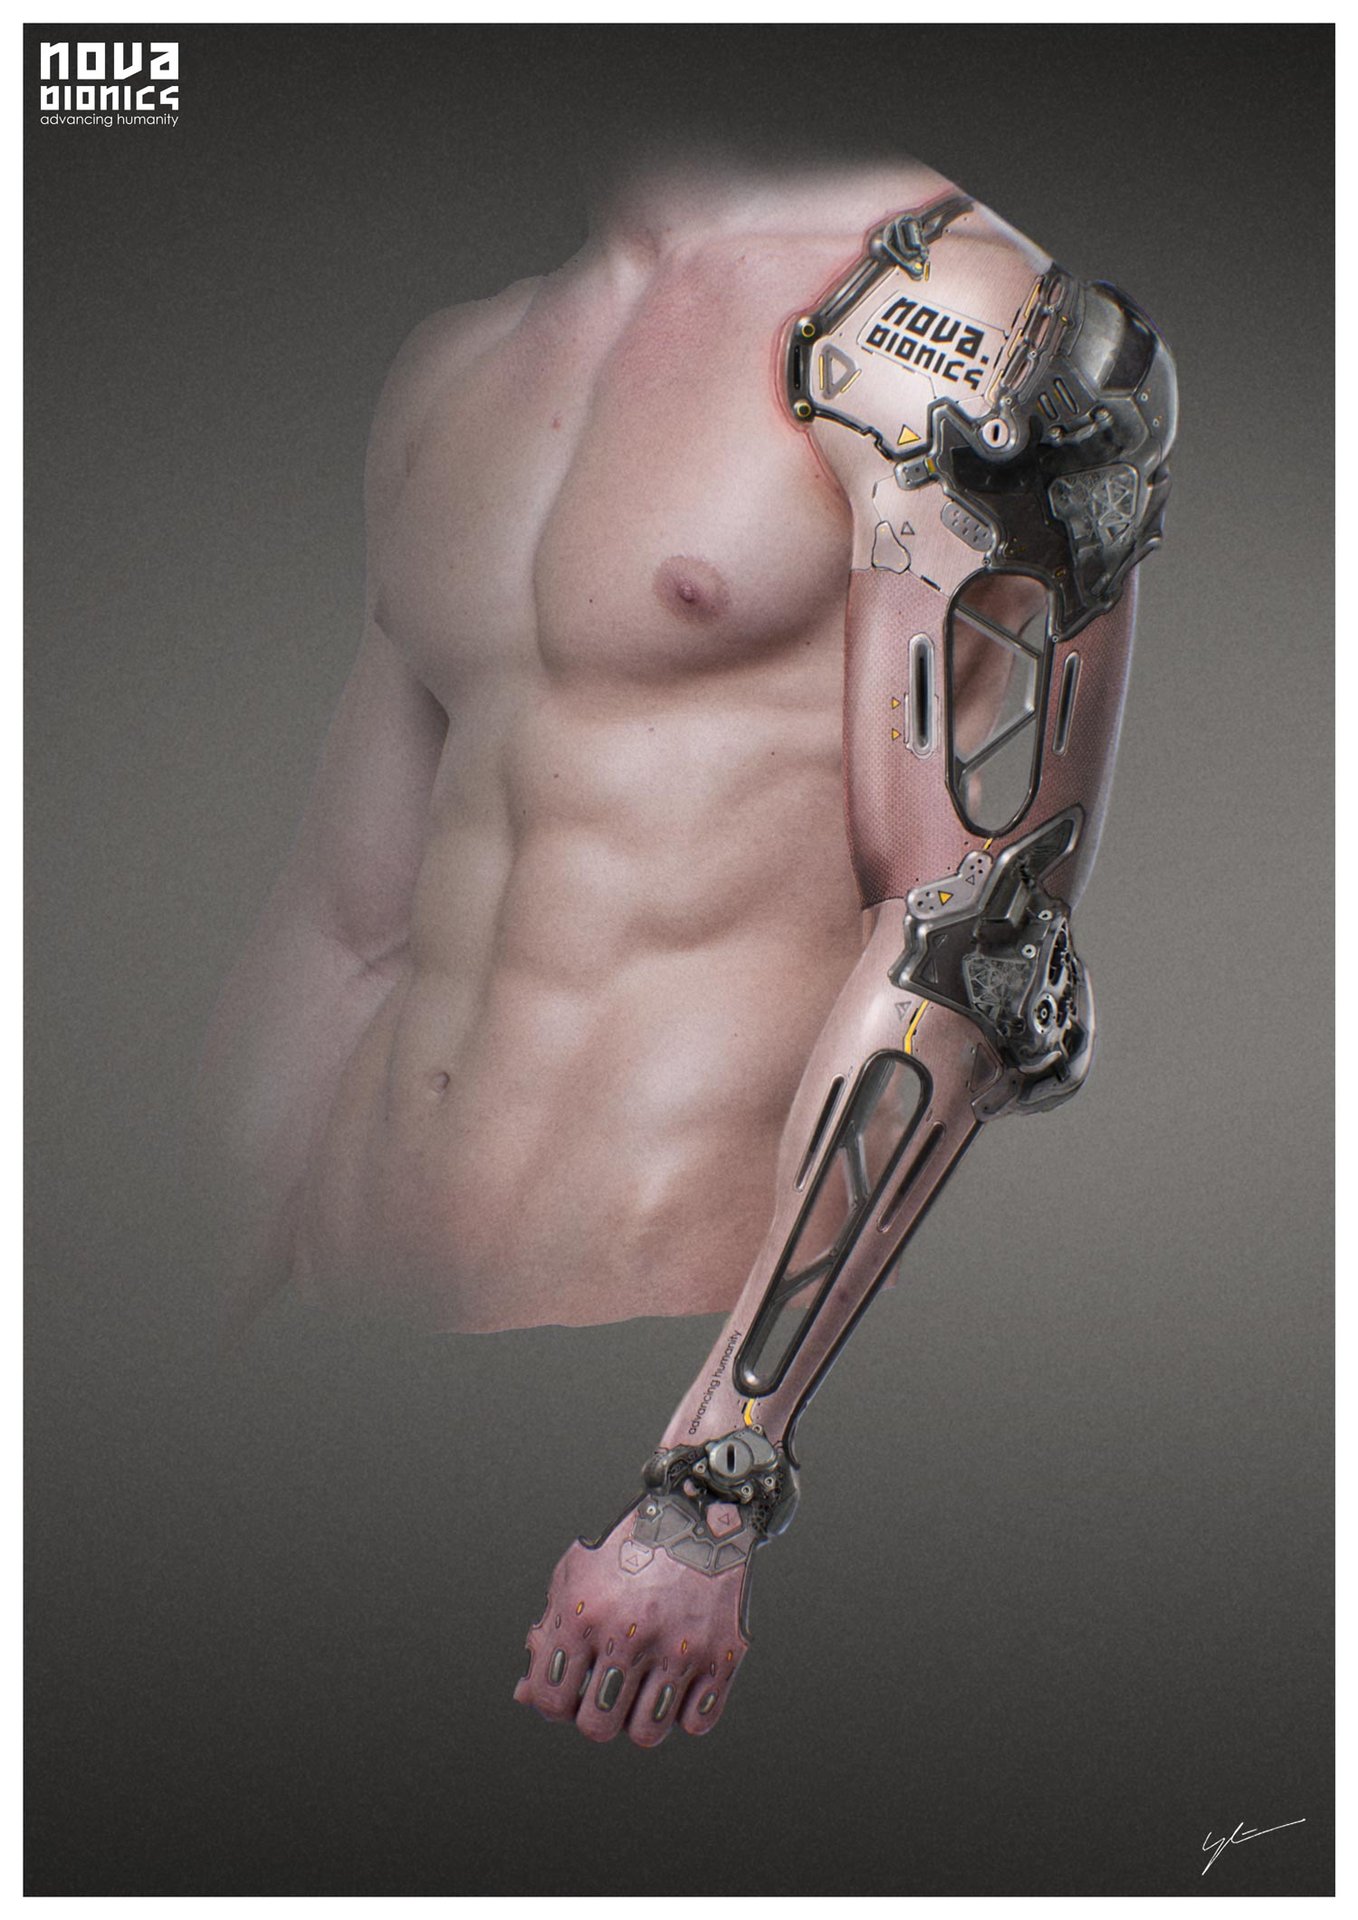 Mechanical Arm Art Installation - Arm Artstation Robot Cyberpunk ...